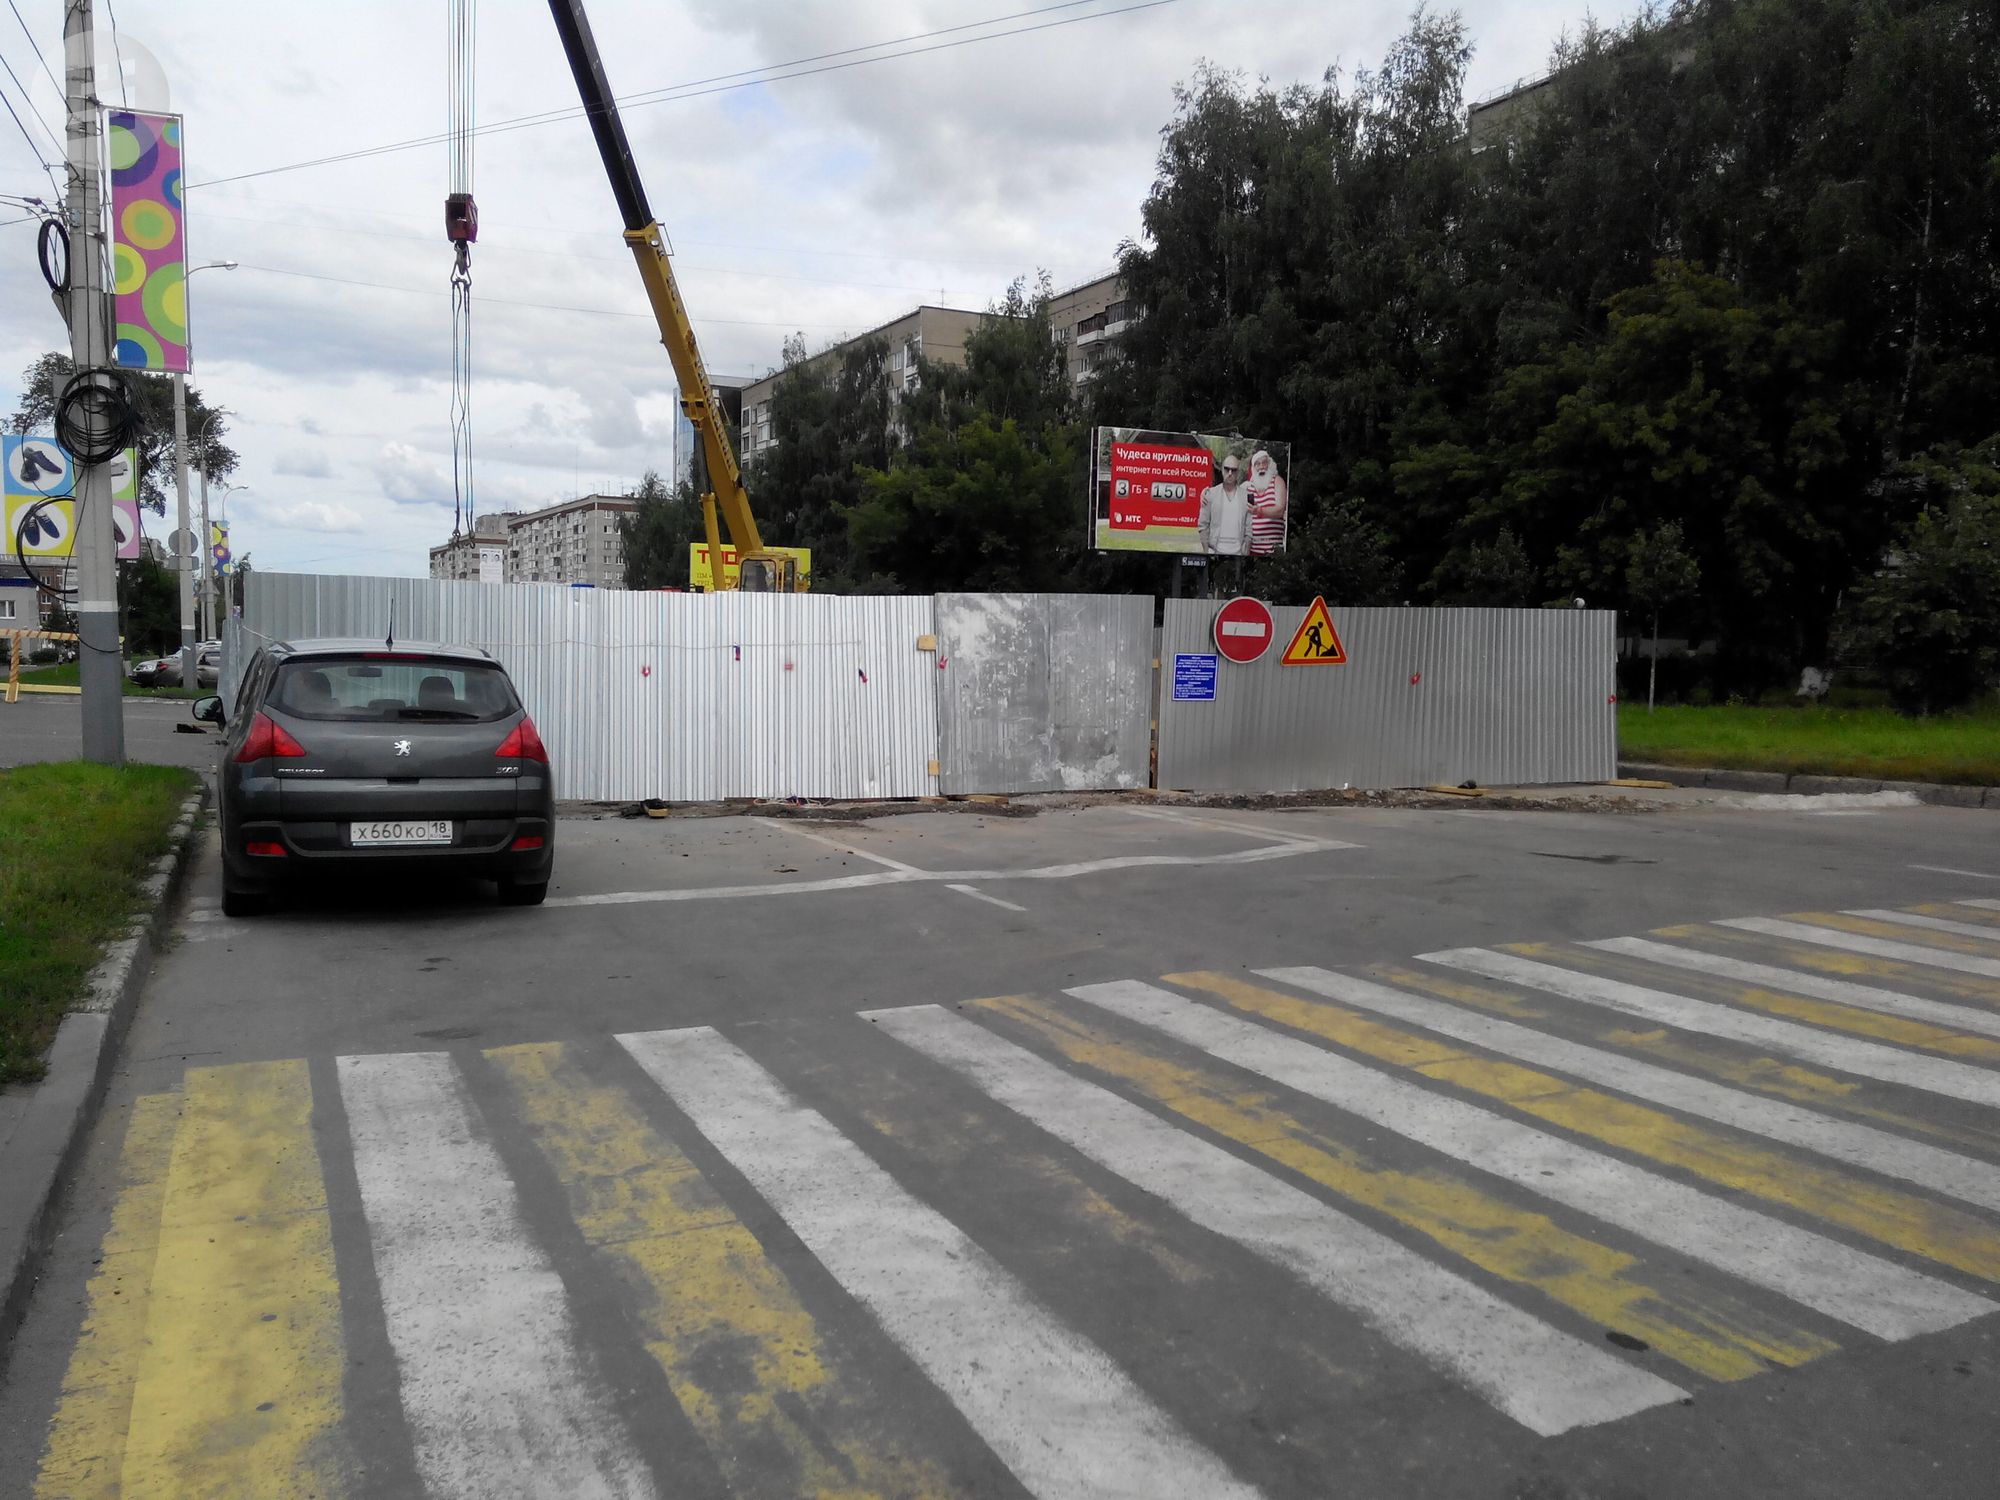 

Мэр Ижевска анонсировал ремонт автодорог в городе в 2021 году

